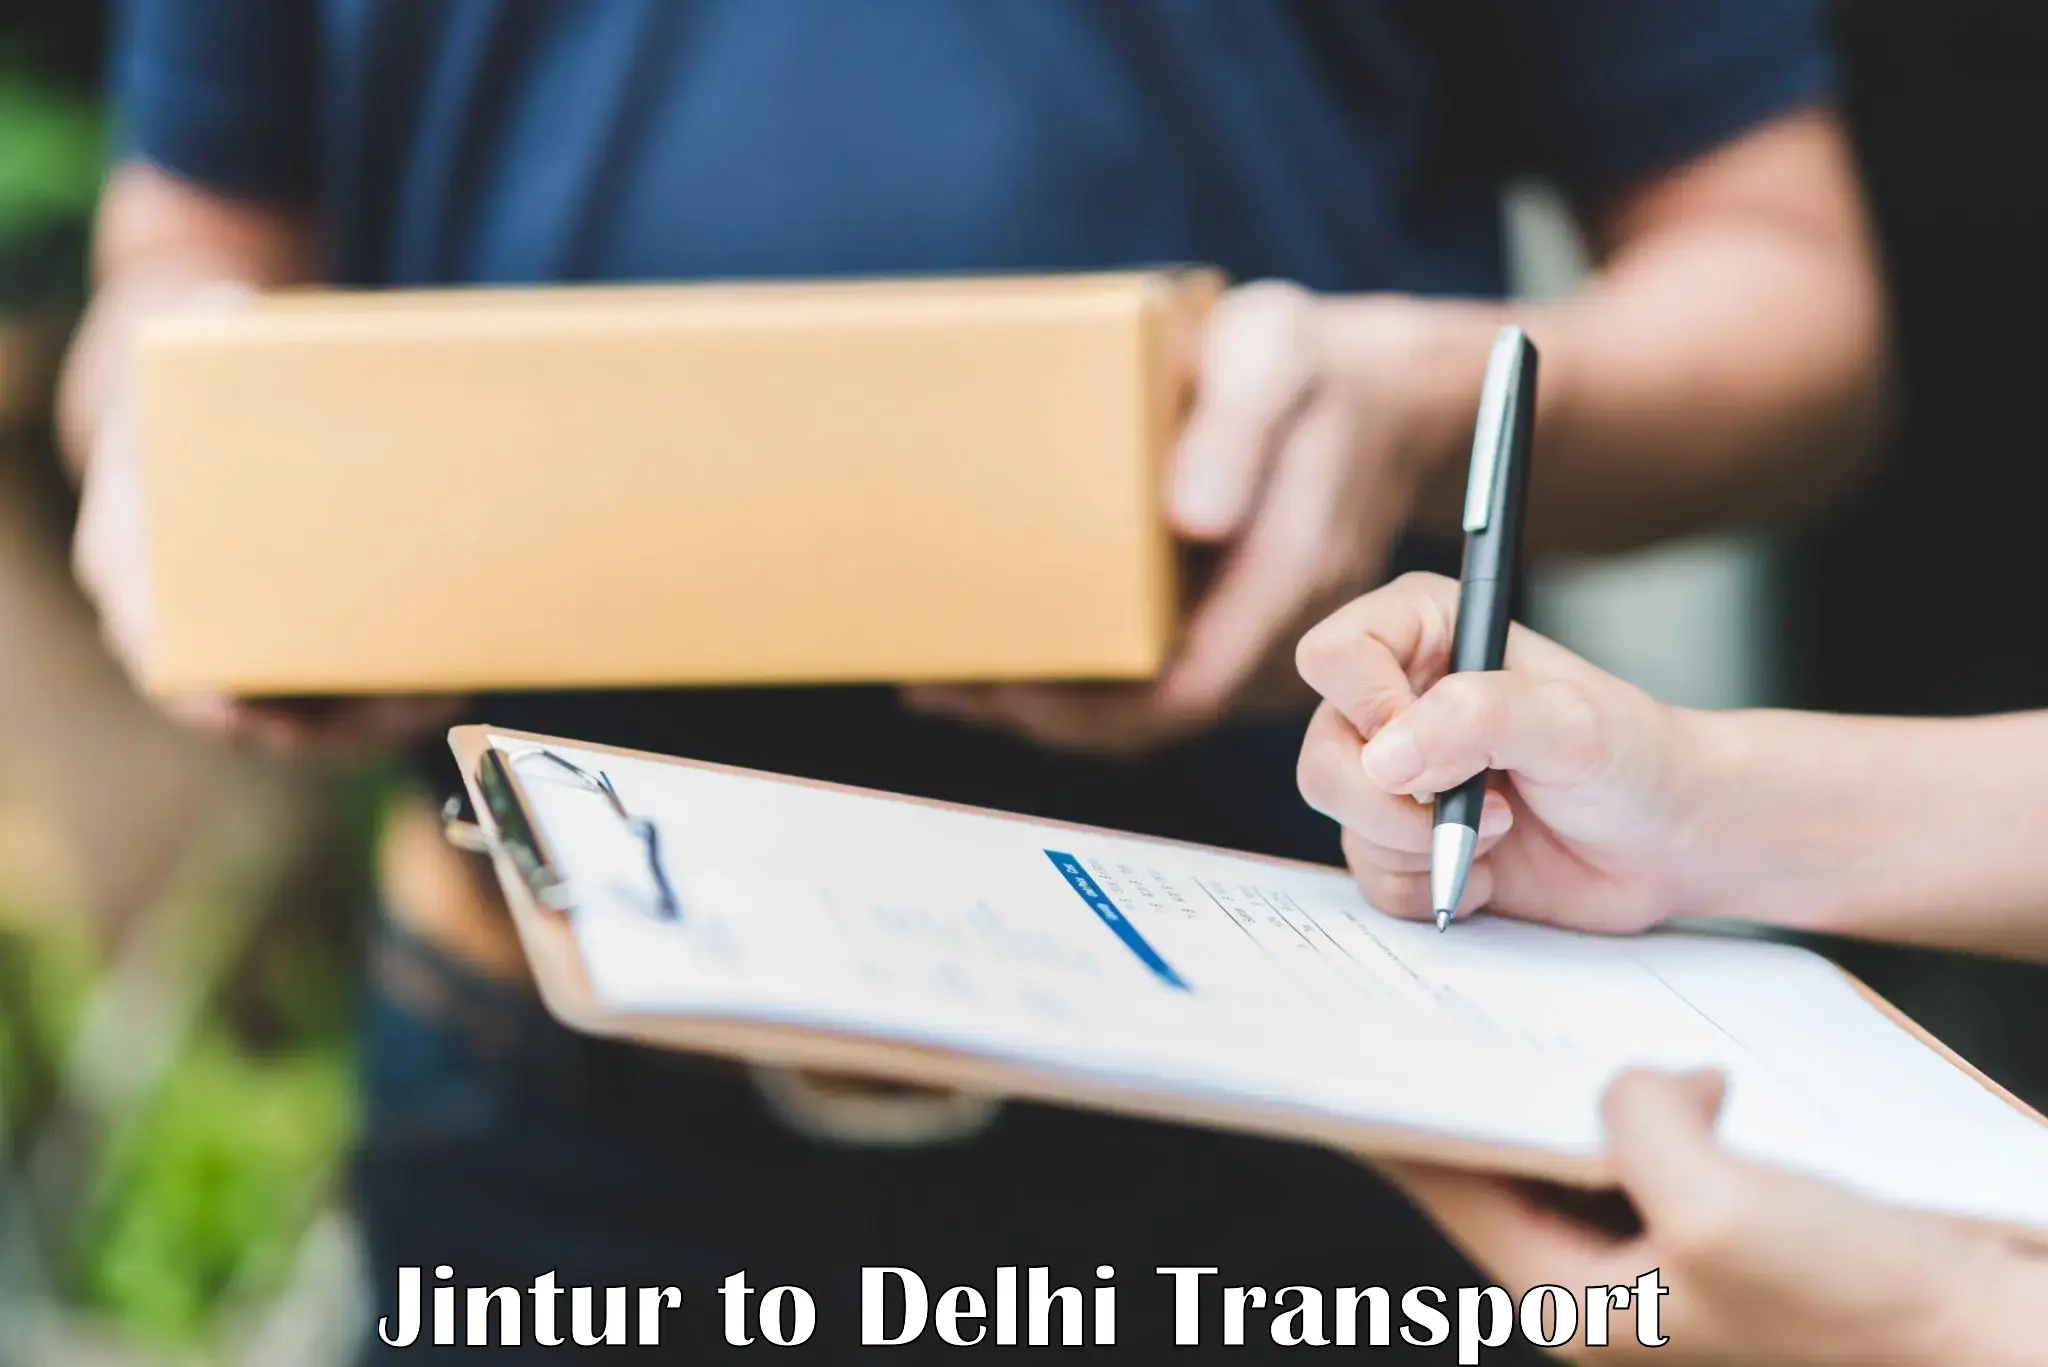 Nationwide transport services Jintur to Delhi Technological University DTU